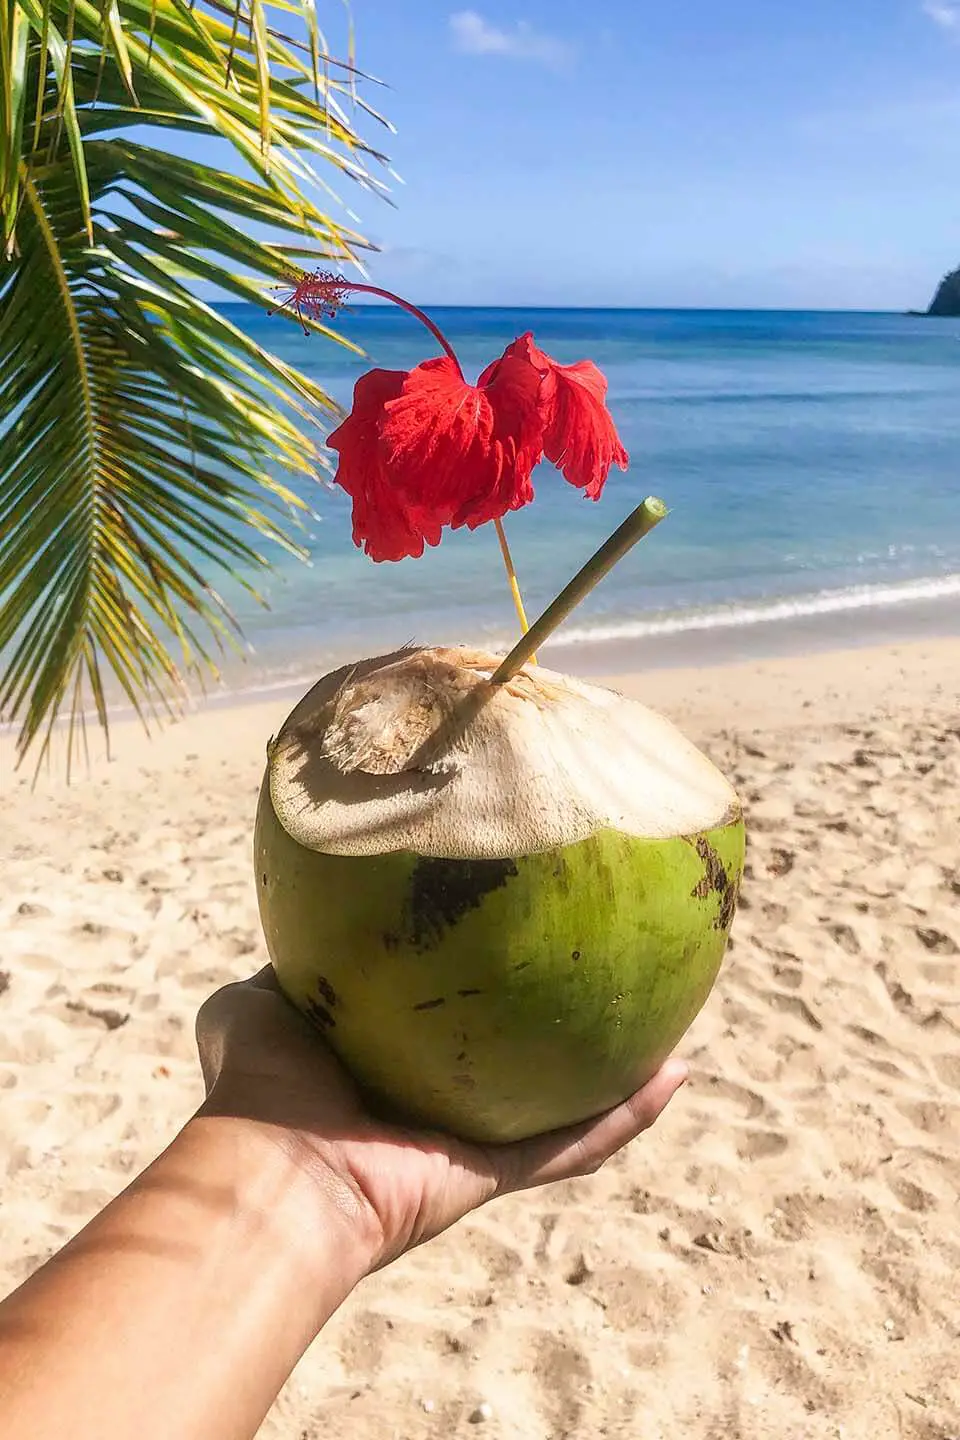 Eco Resort in Fiji Uses Papaya Straw as Alternative to Plastic Straws